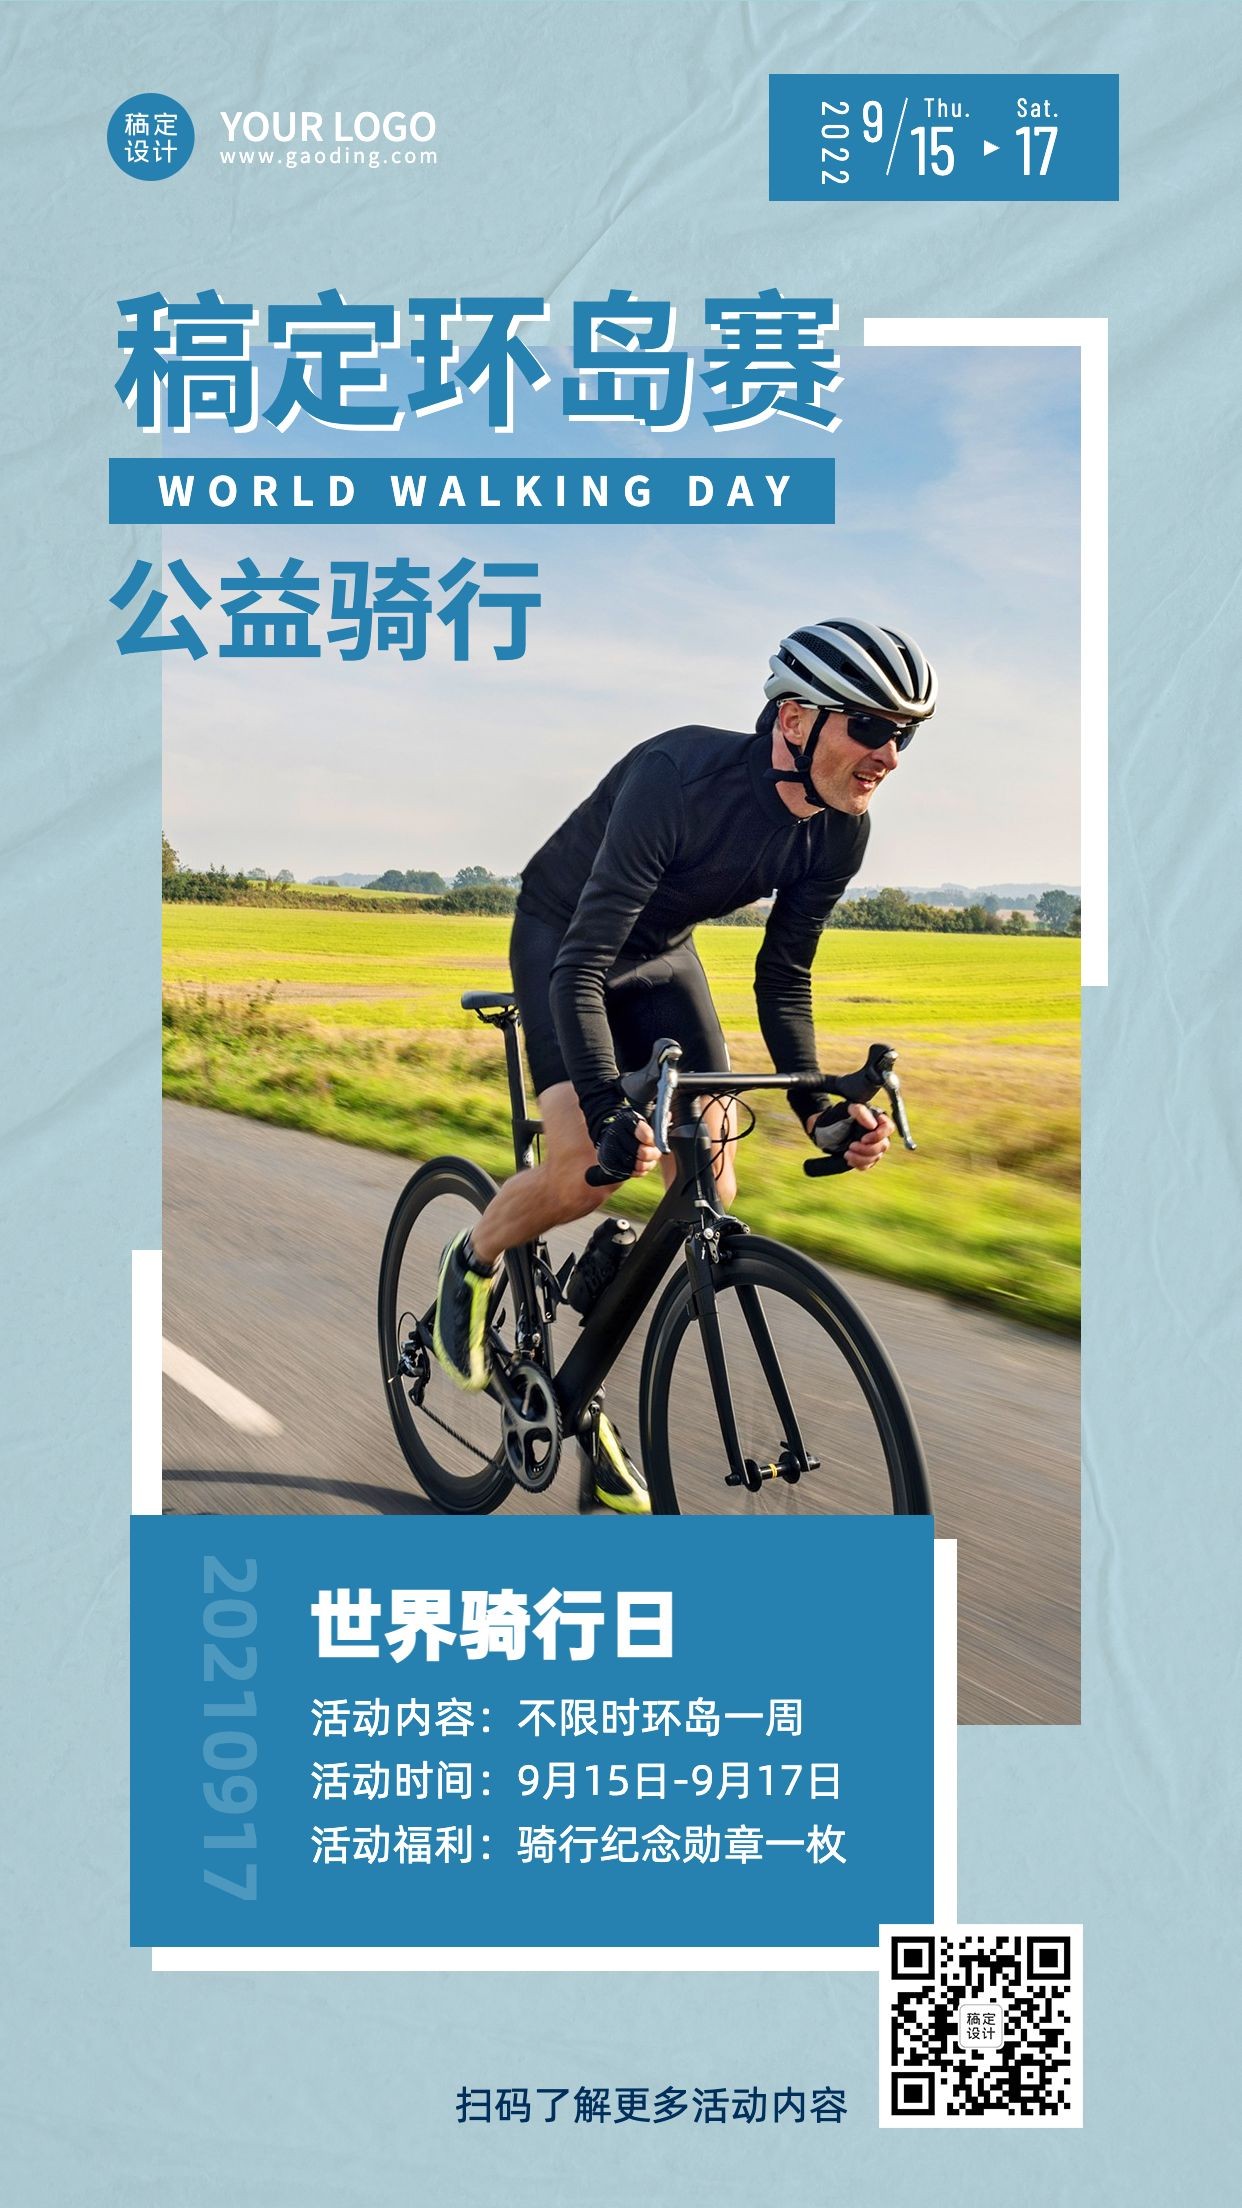 世界骑行日低碳环保出行节日活动实景海报预览效果